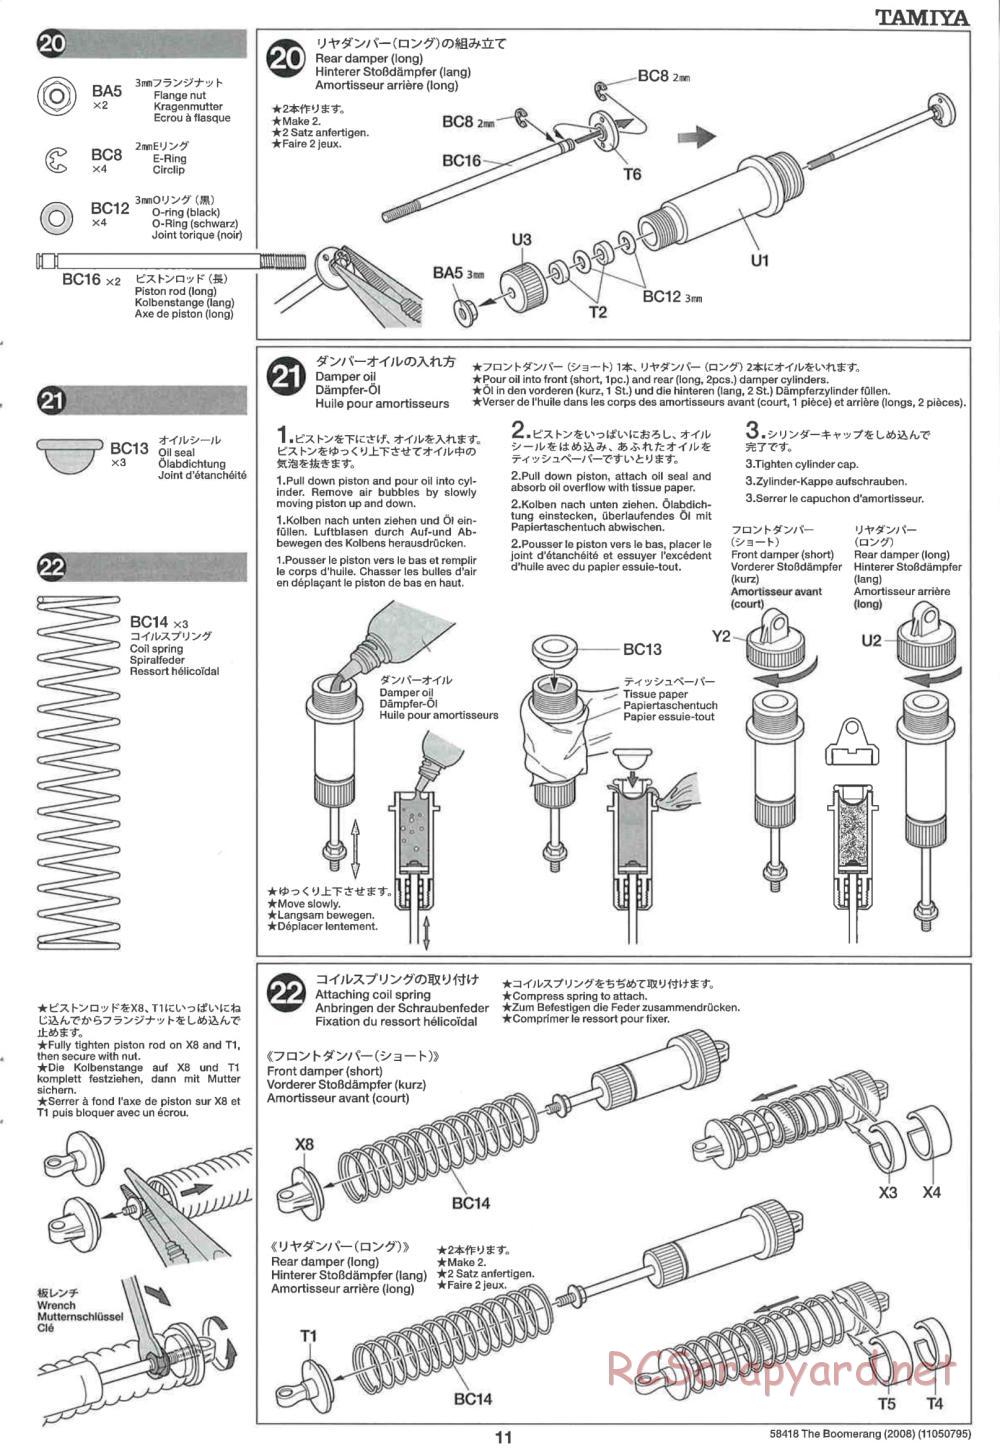 Tamiya - The Boomerang 2008 Chassis - Manual - Page 11